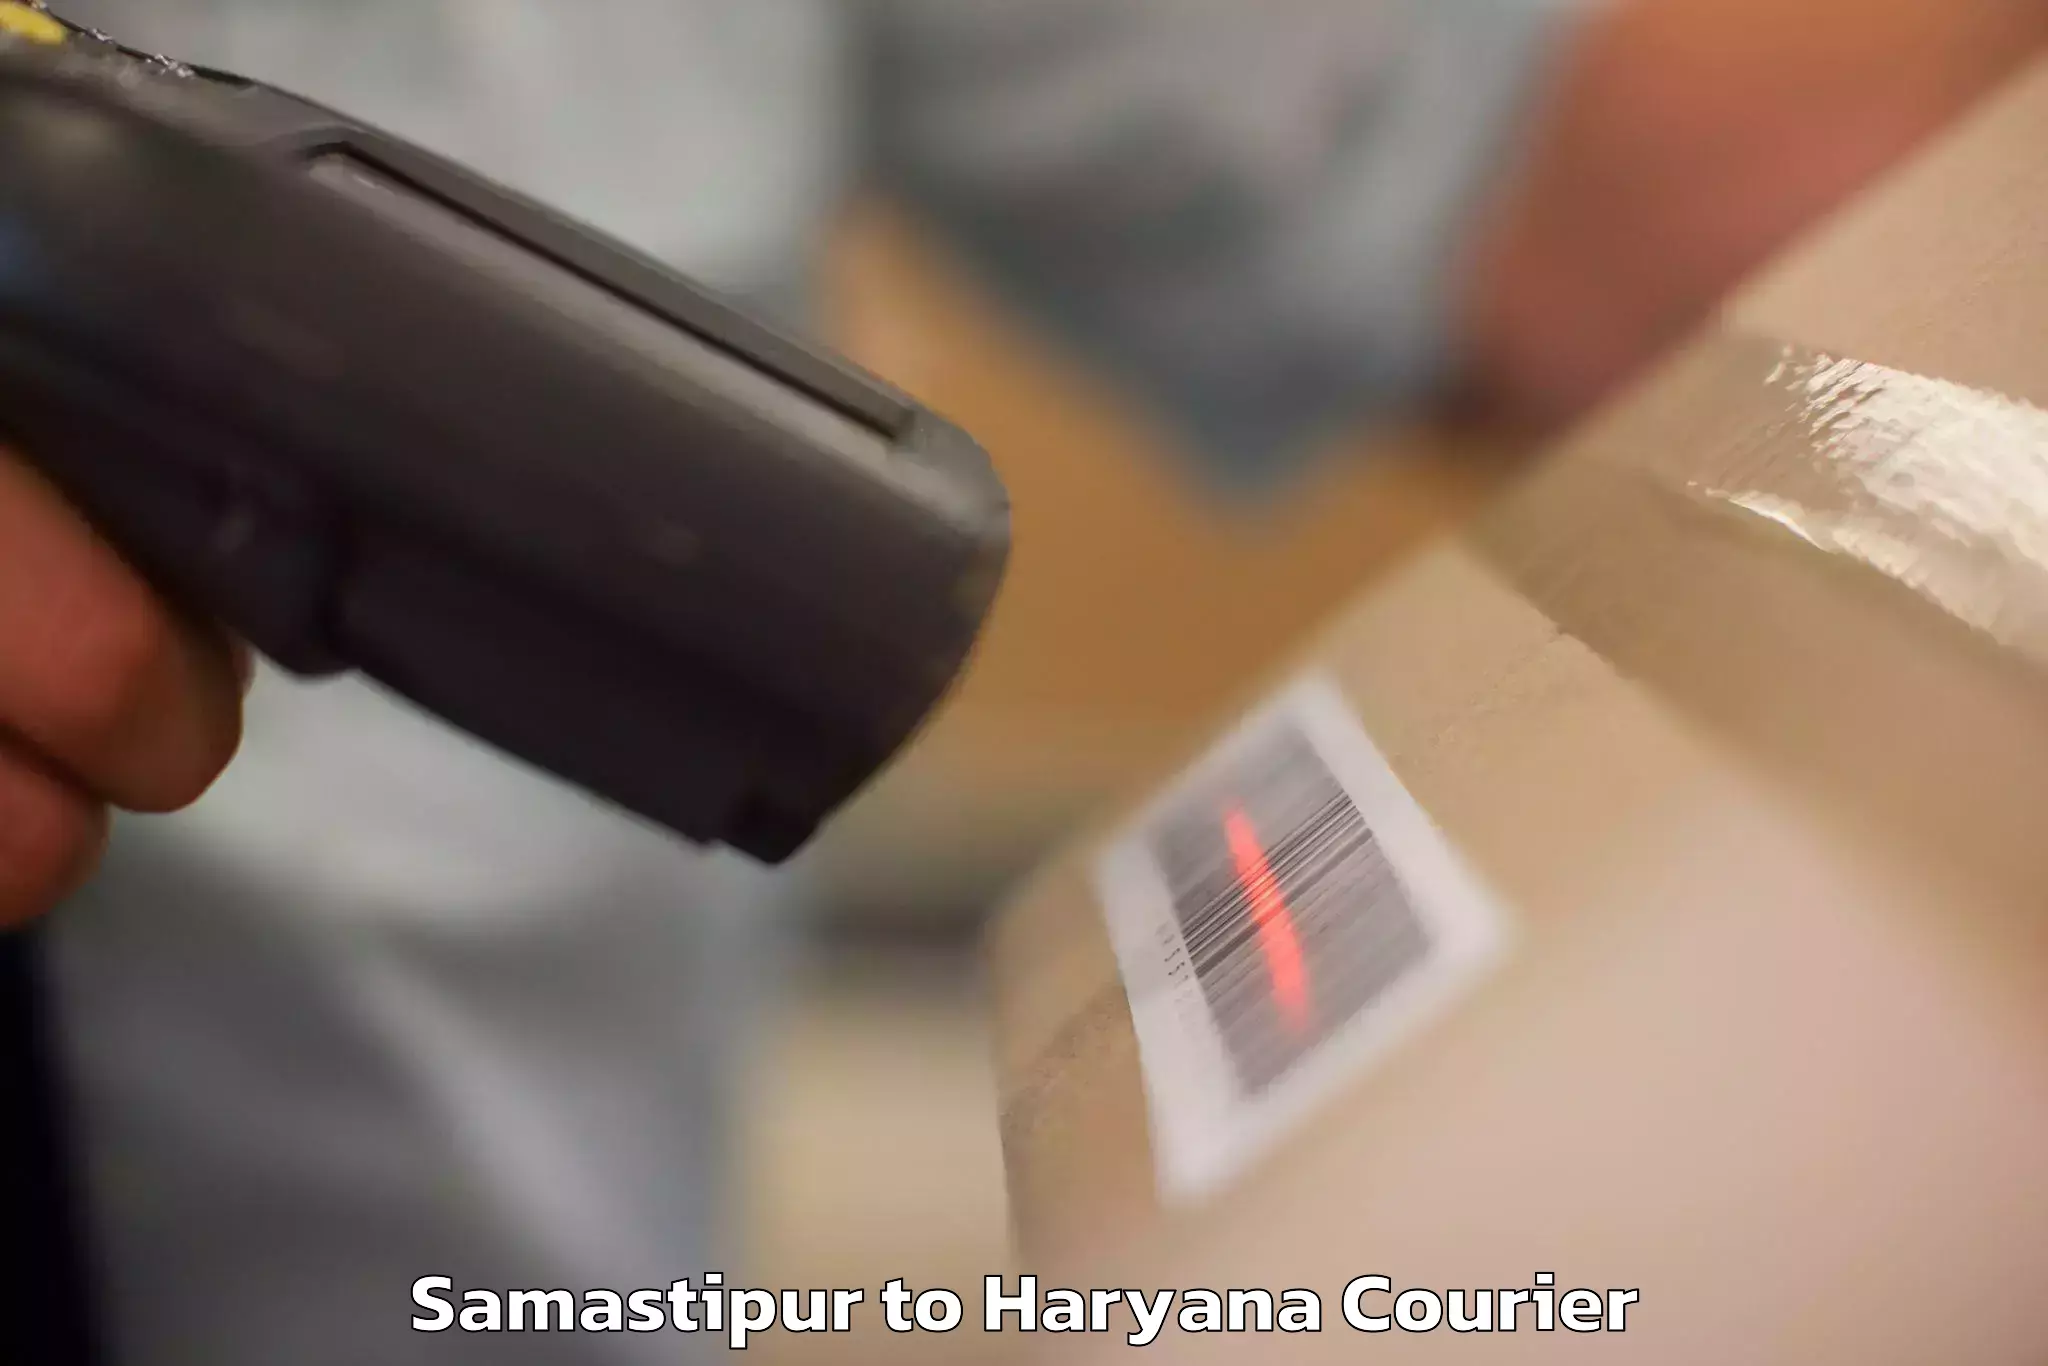 Baggage shipping service Samastipur to NCR Haryana